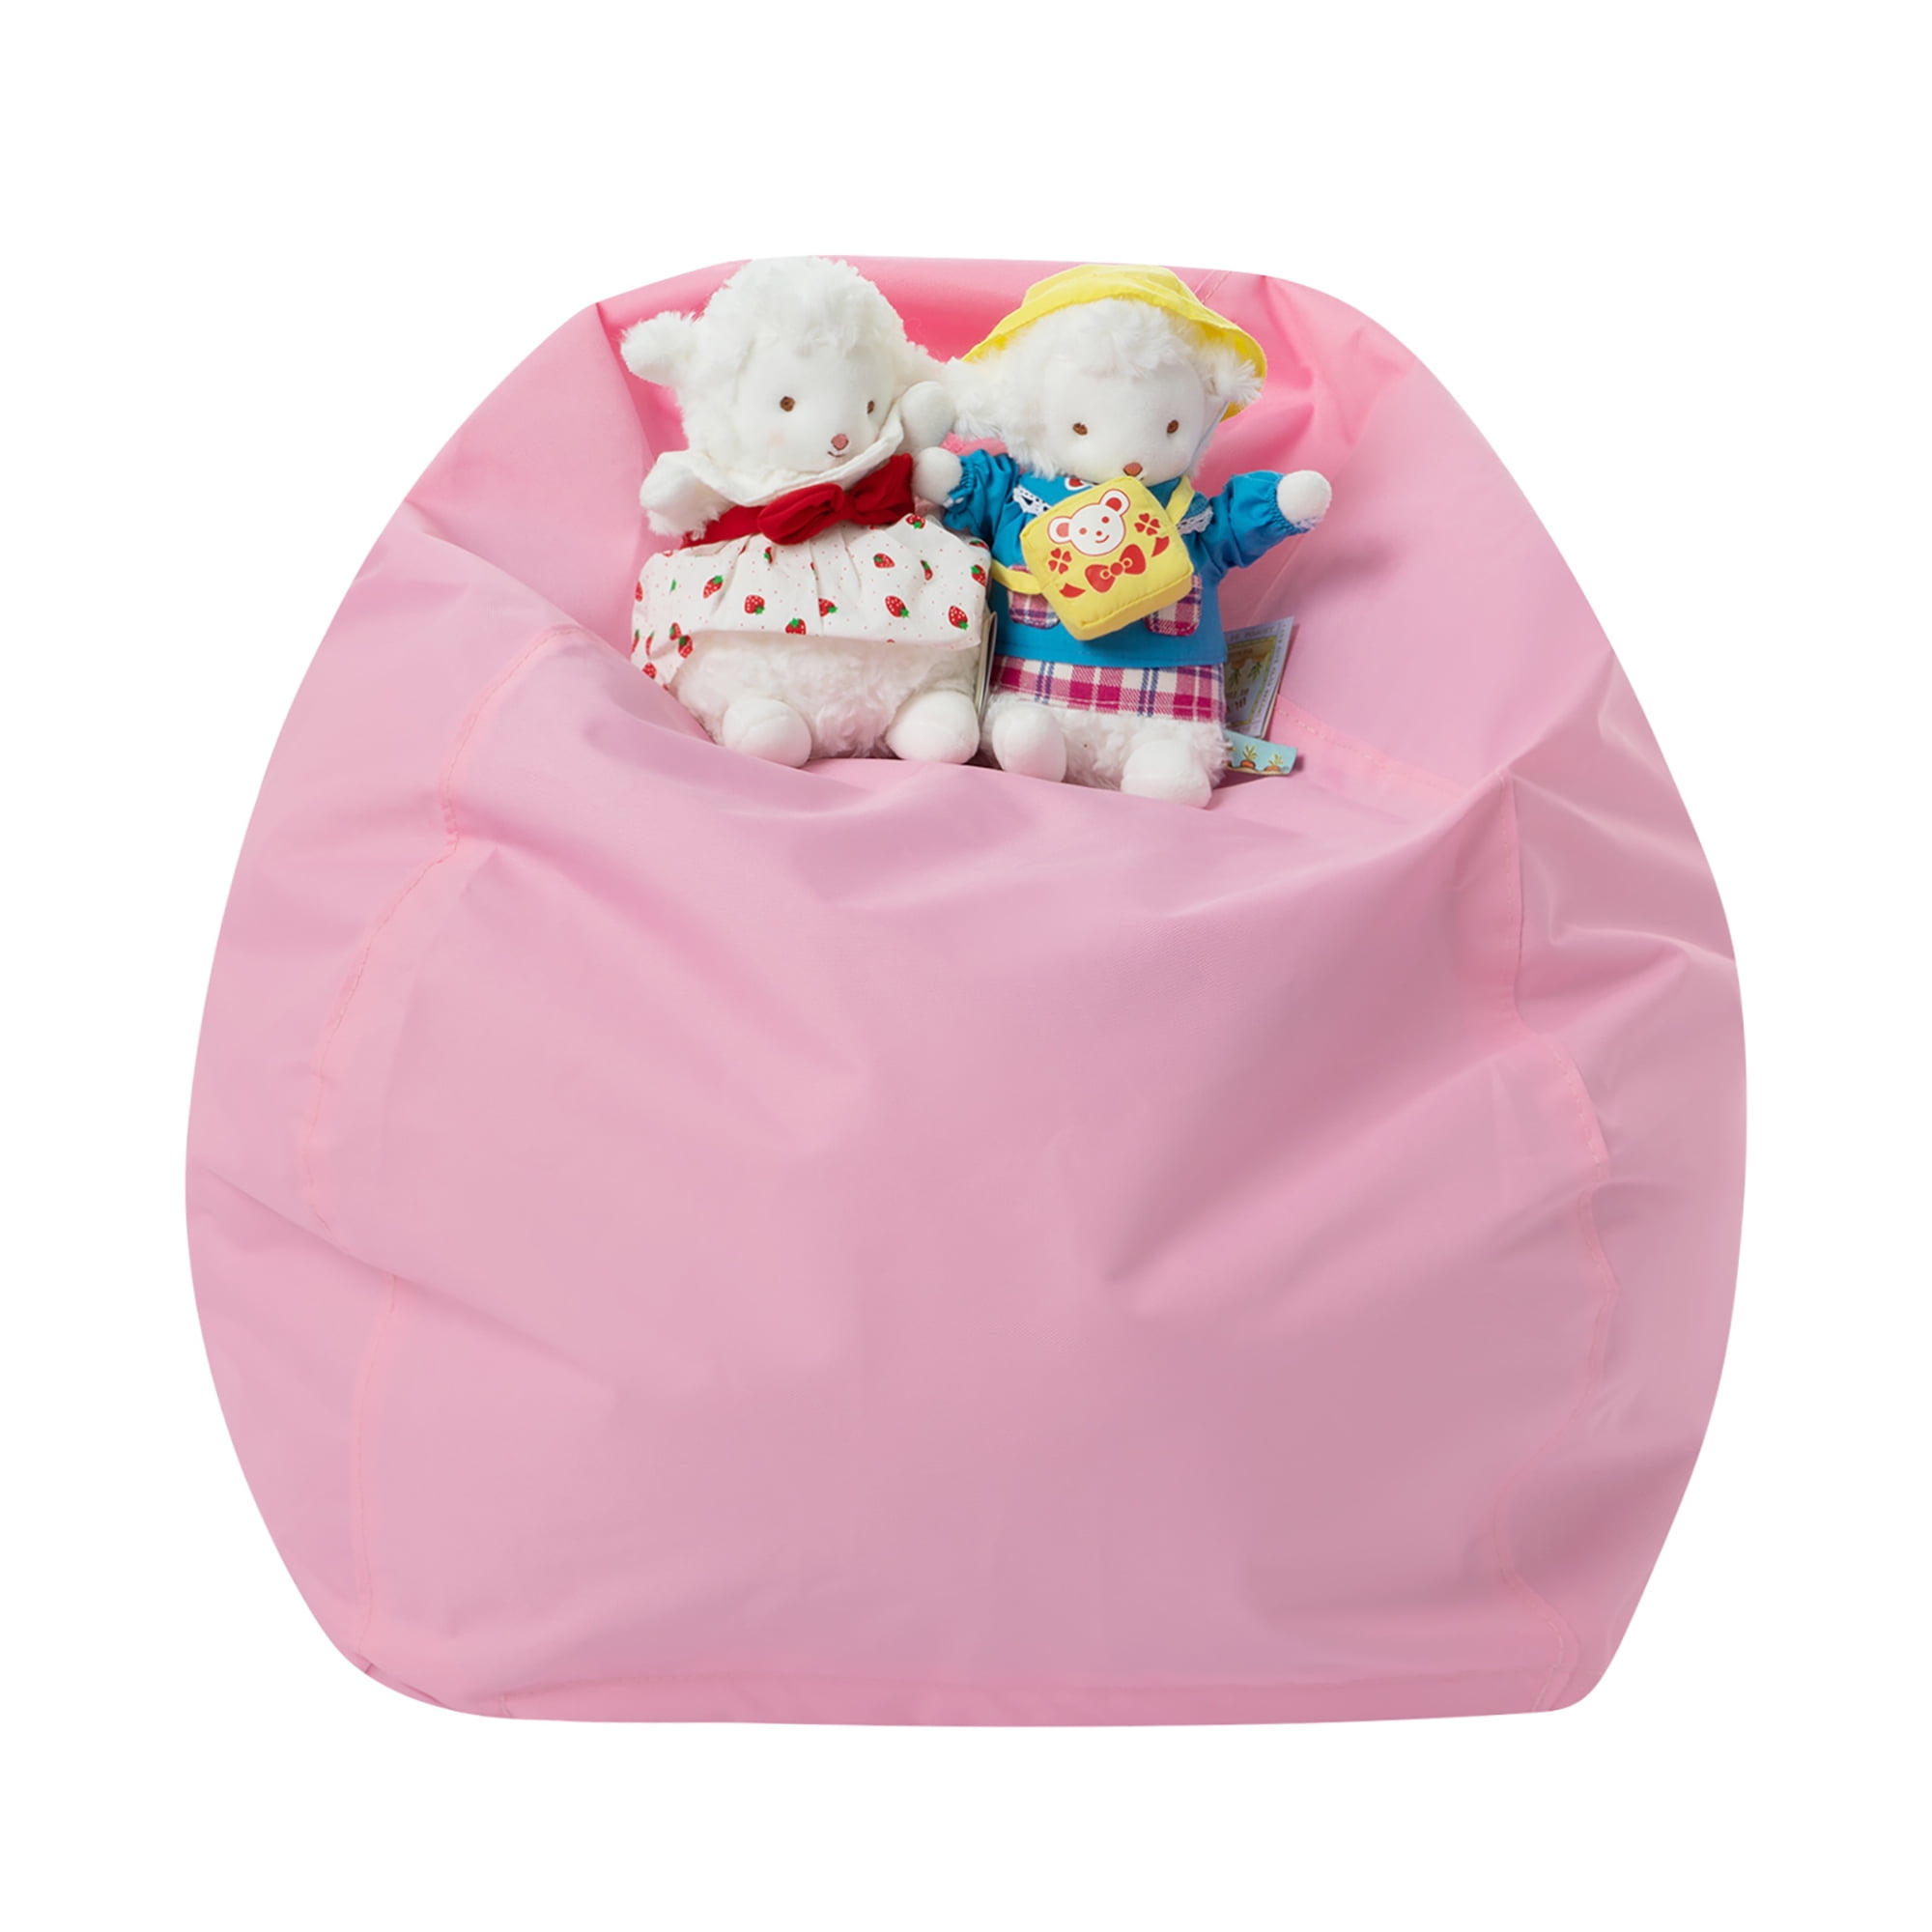 Multifunctional Large Bean Bag Waterproof Lounger Beanbag Kids Toys Storage Bag 